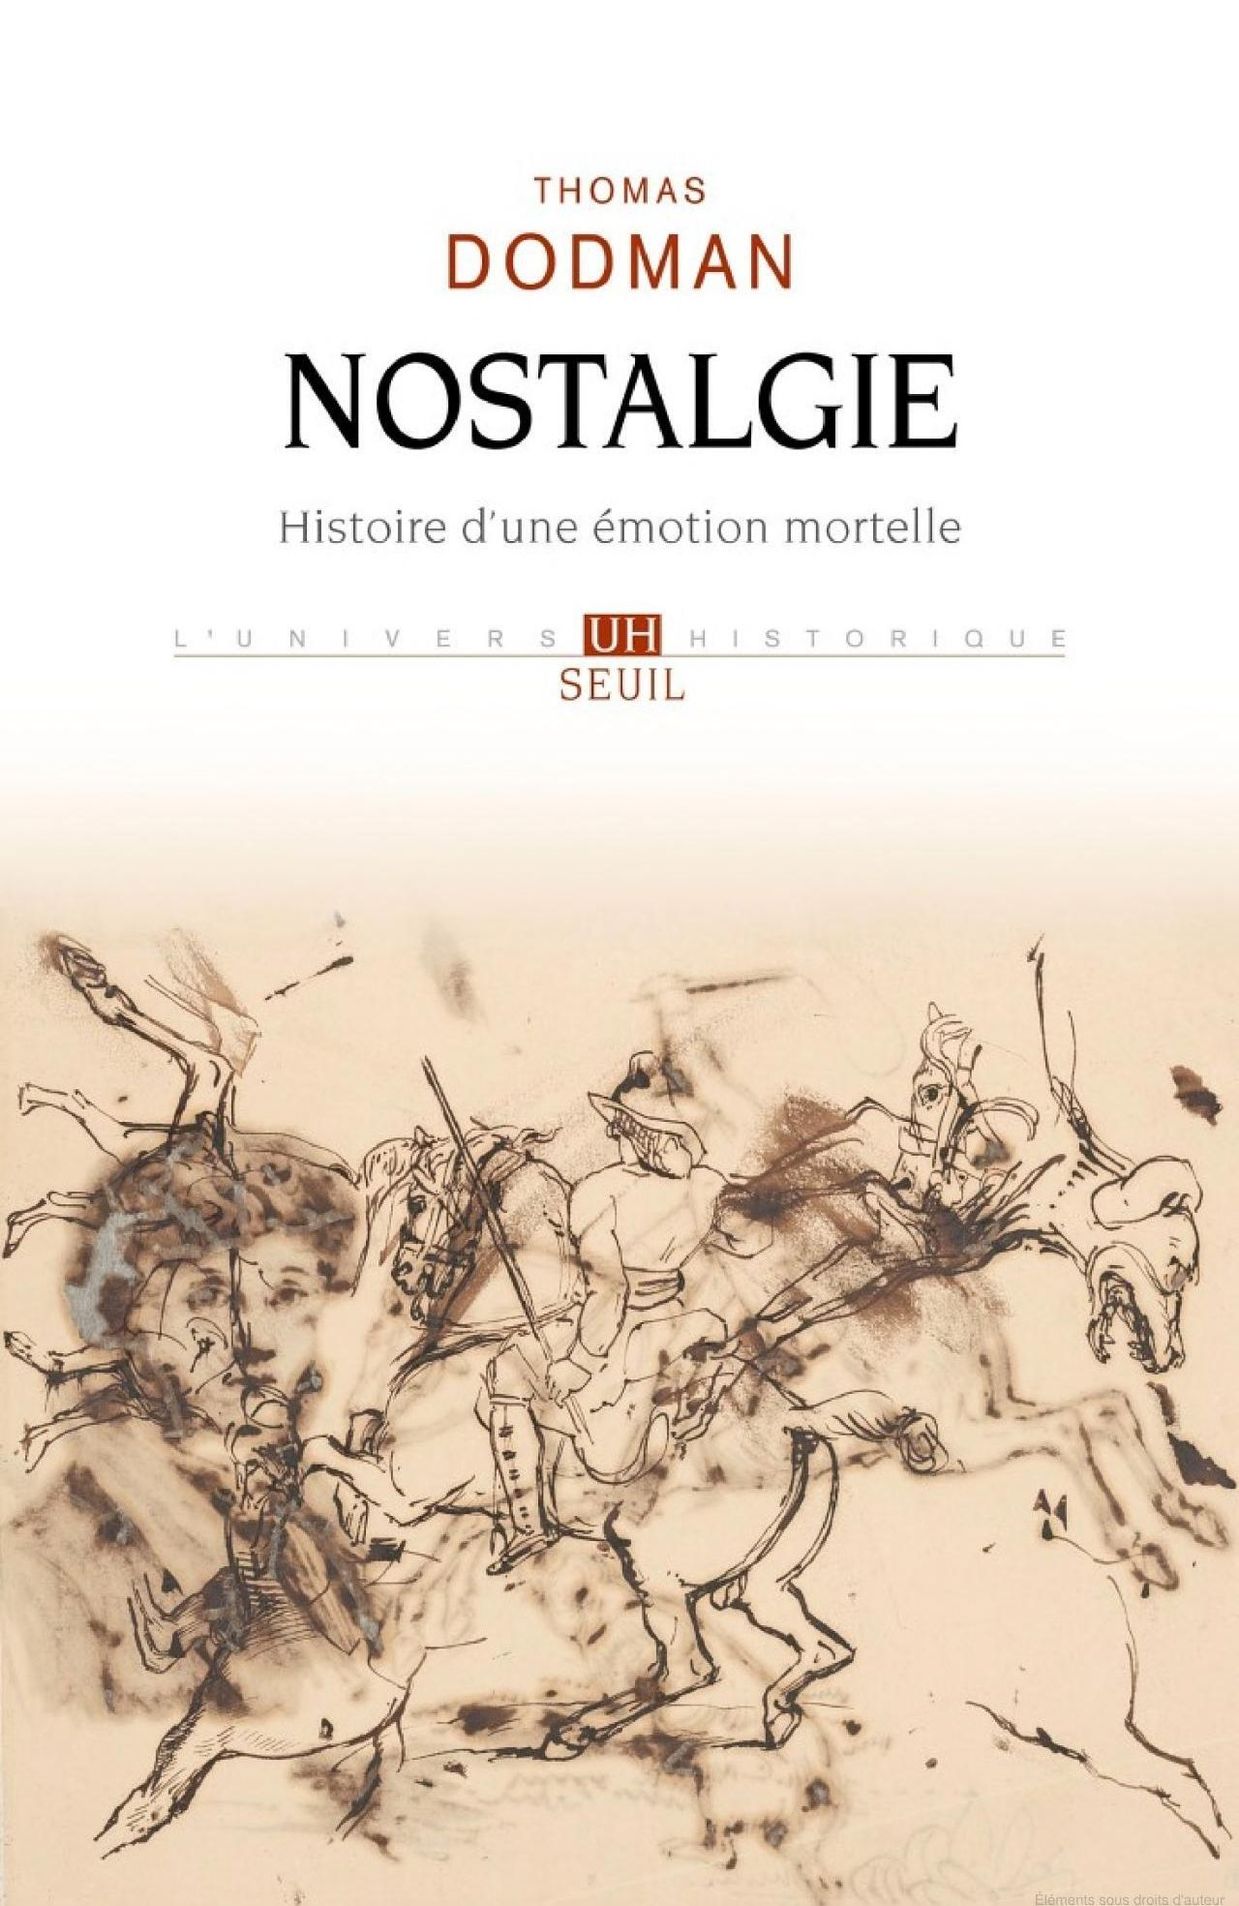 Thomas Dodman publie "Nostalgie – Histoire d’une émotion mortelle"